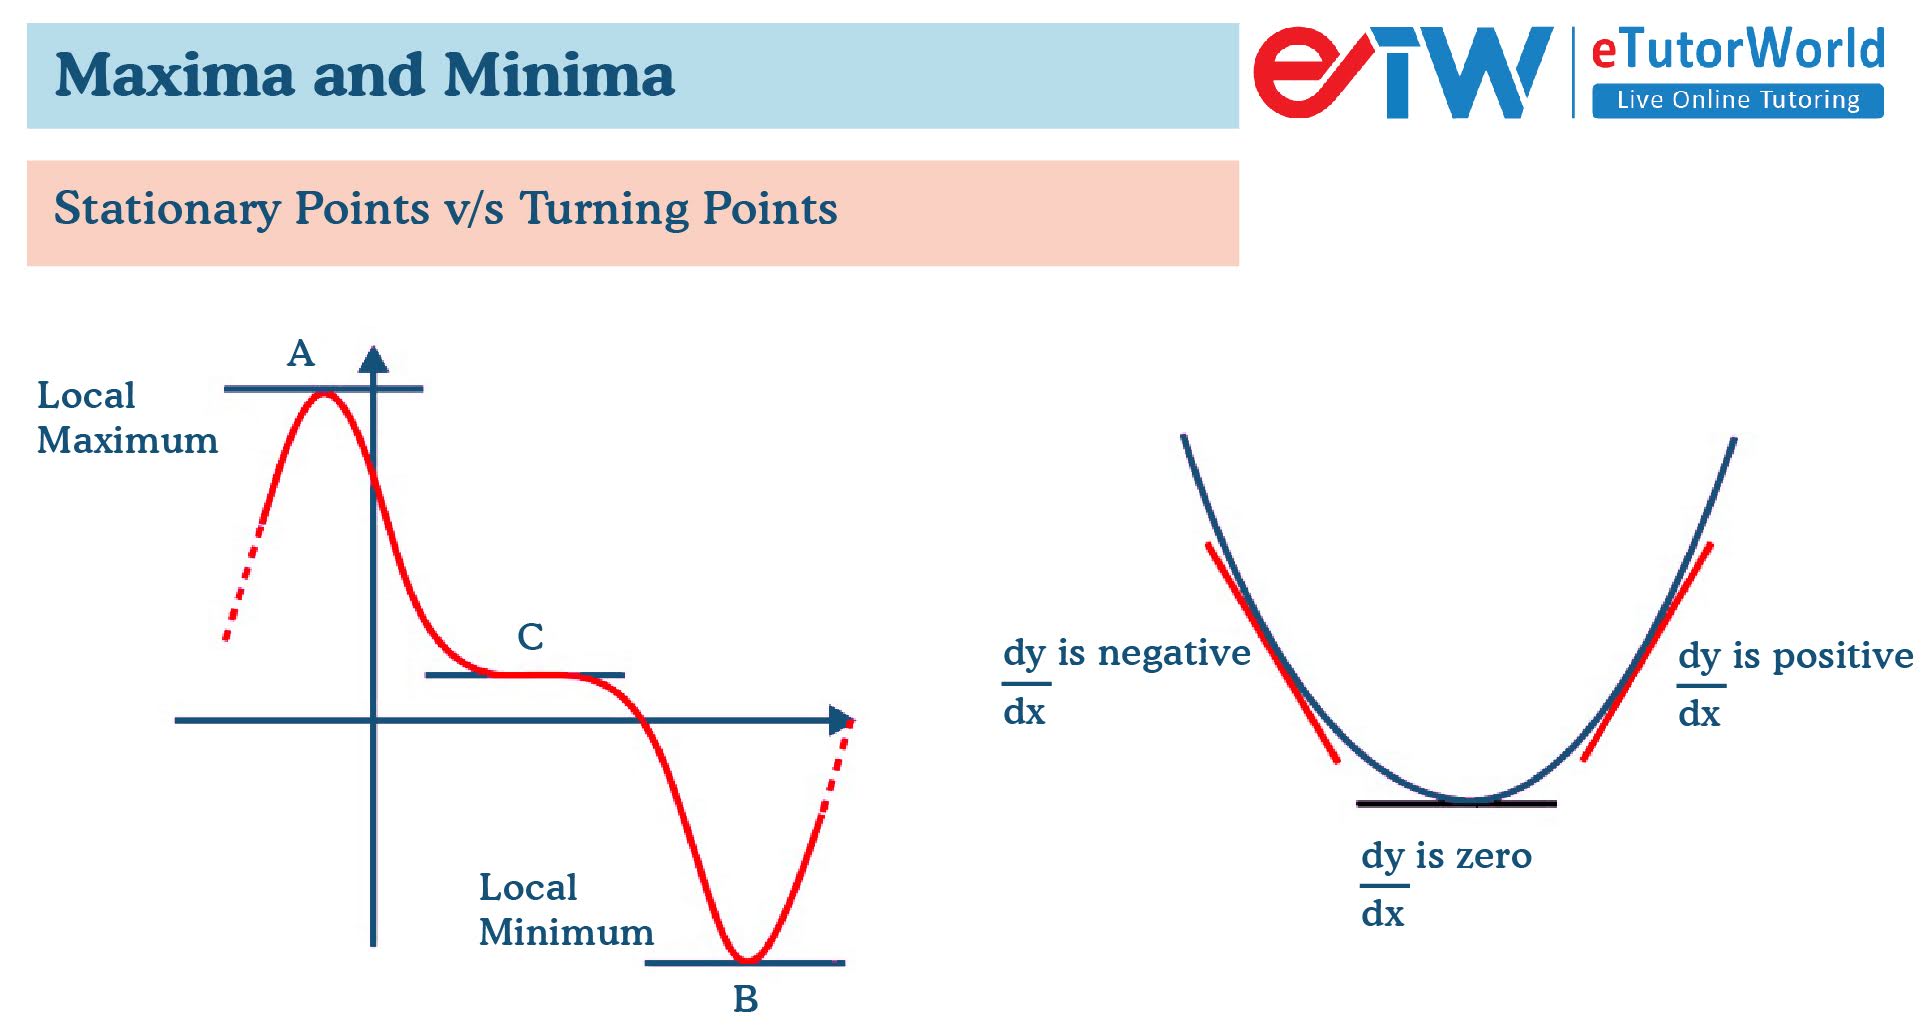 maxima and minima stationary points vs turning points